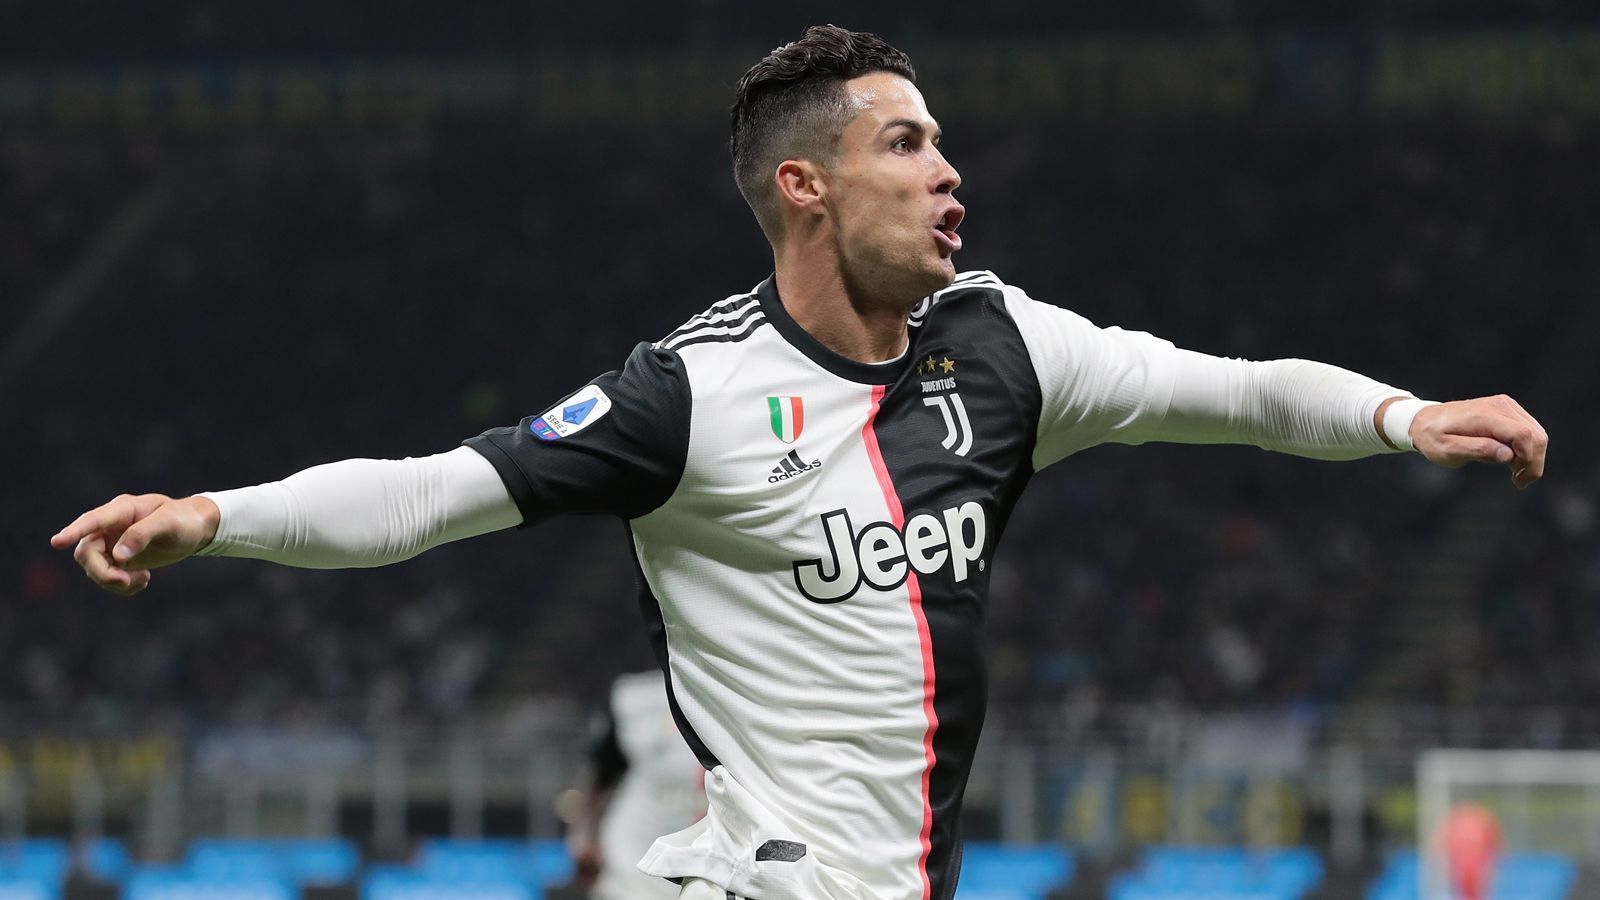 
                <strong>Top-Influencer Ronaldo</strong><br>
                Der Kicker, dem weltweit am meisten Geld pro Instagram-Post winkt, ist übrigens - wenig überraschend - Cristiano Ronaldo. Der Angreifer von Juventus Turin und Top-Influencer (fast 206 Millionen Follower) kann pro Beitrag über 887.000 Euro scheffeln.
              